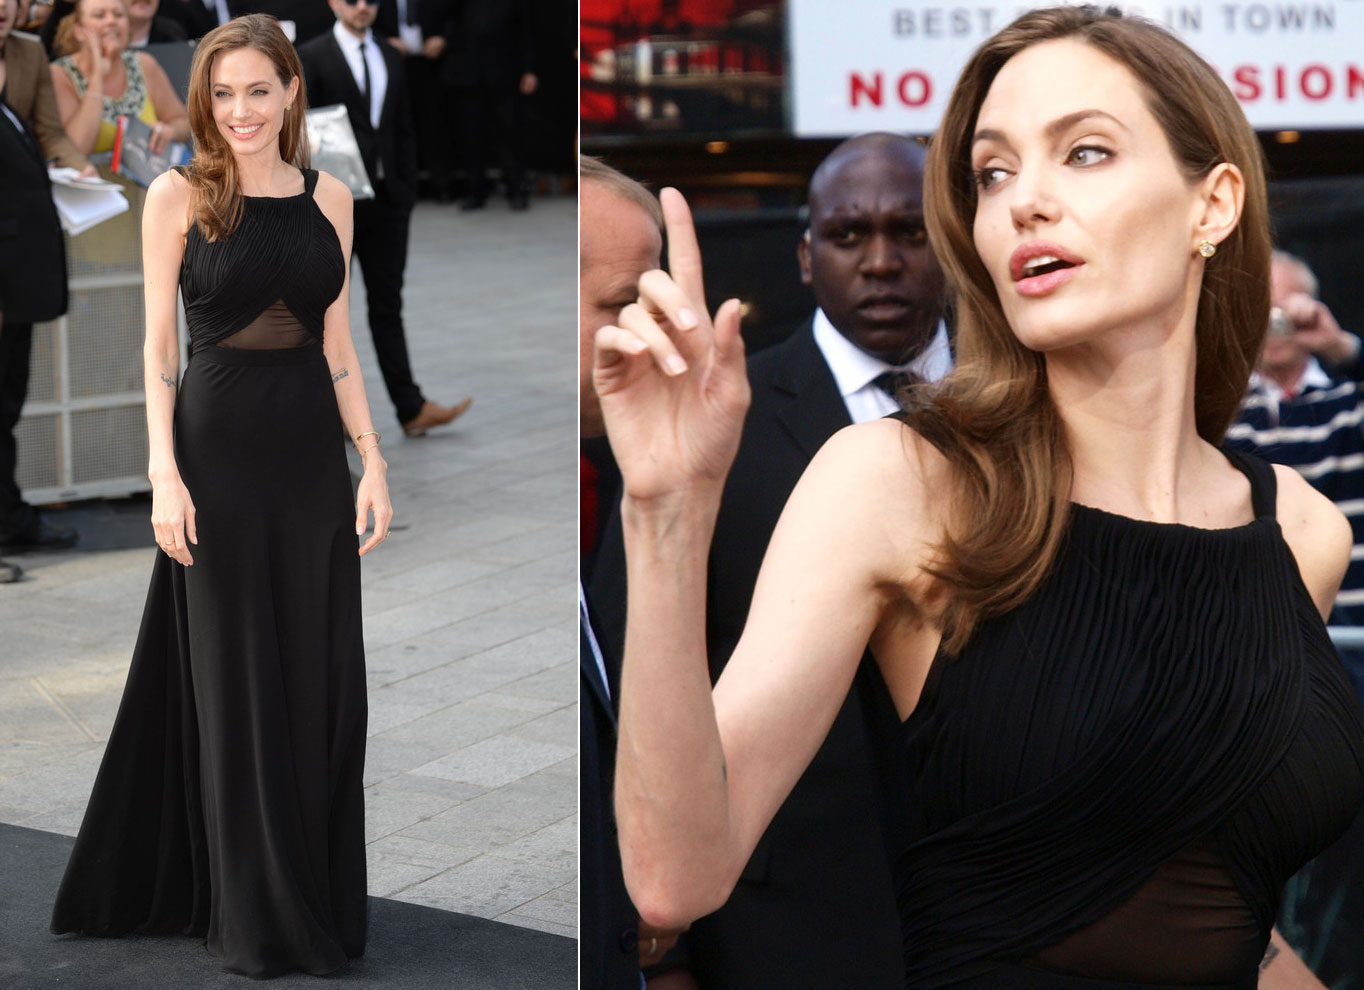 blog de moda | entretenimento | Angelina Jolie | Angelia Jolie e mastectomia | primeira aparição pública de Angelina Jolie após dupla mastectomia | celebridades | fofocas de celebridades